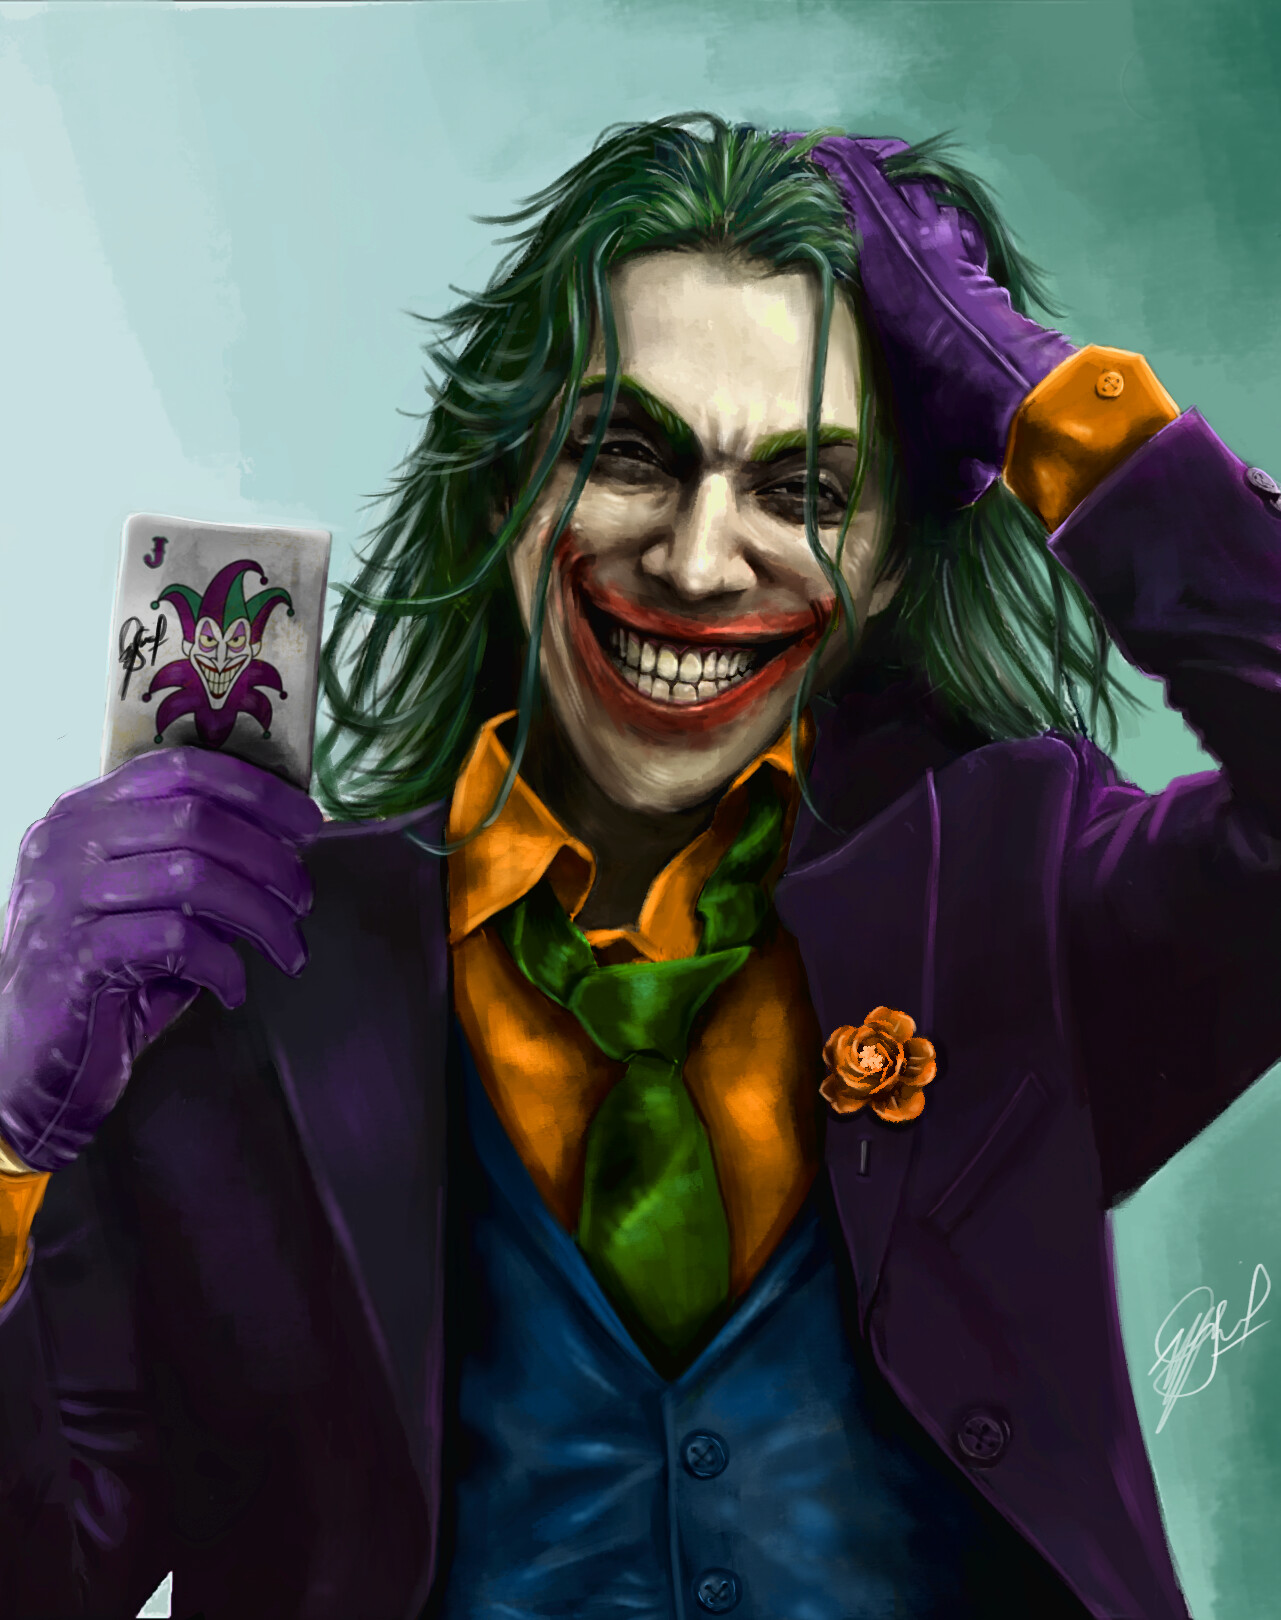 ArtStation - Jalex Rosa as The Joker